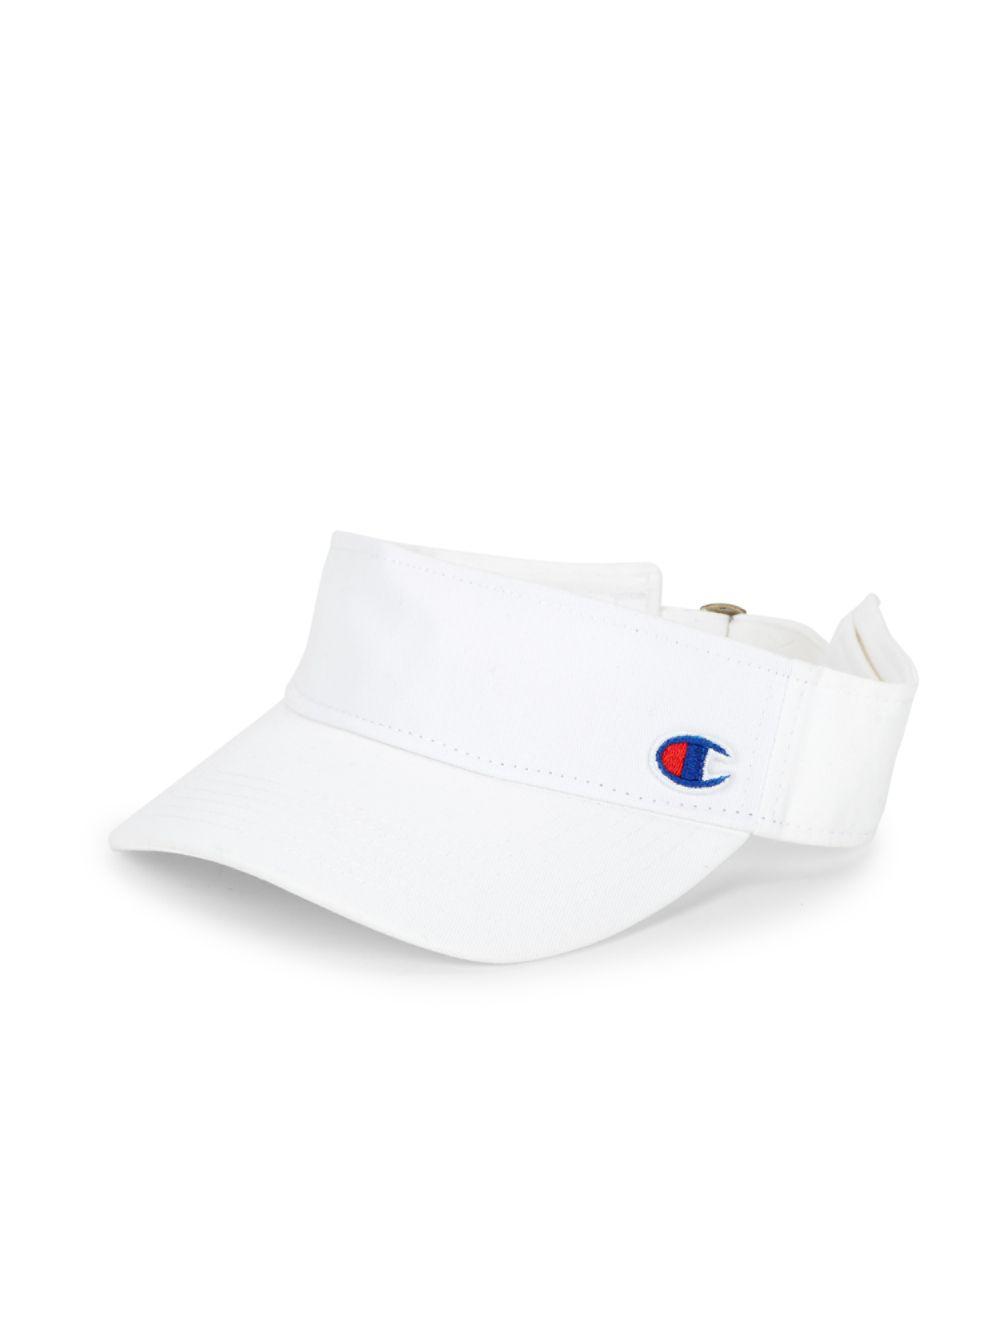 white champion visor